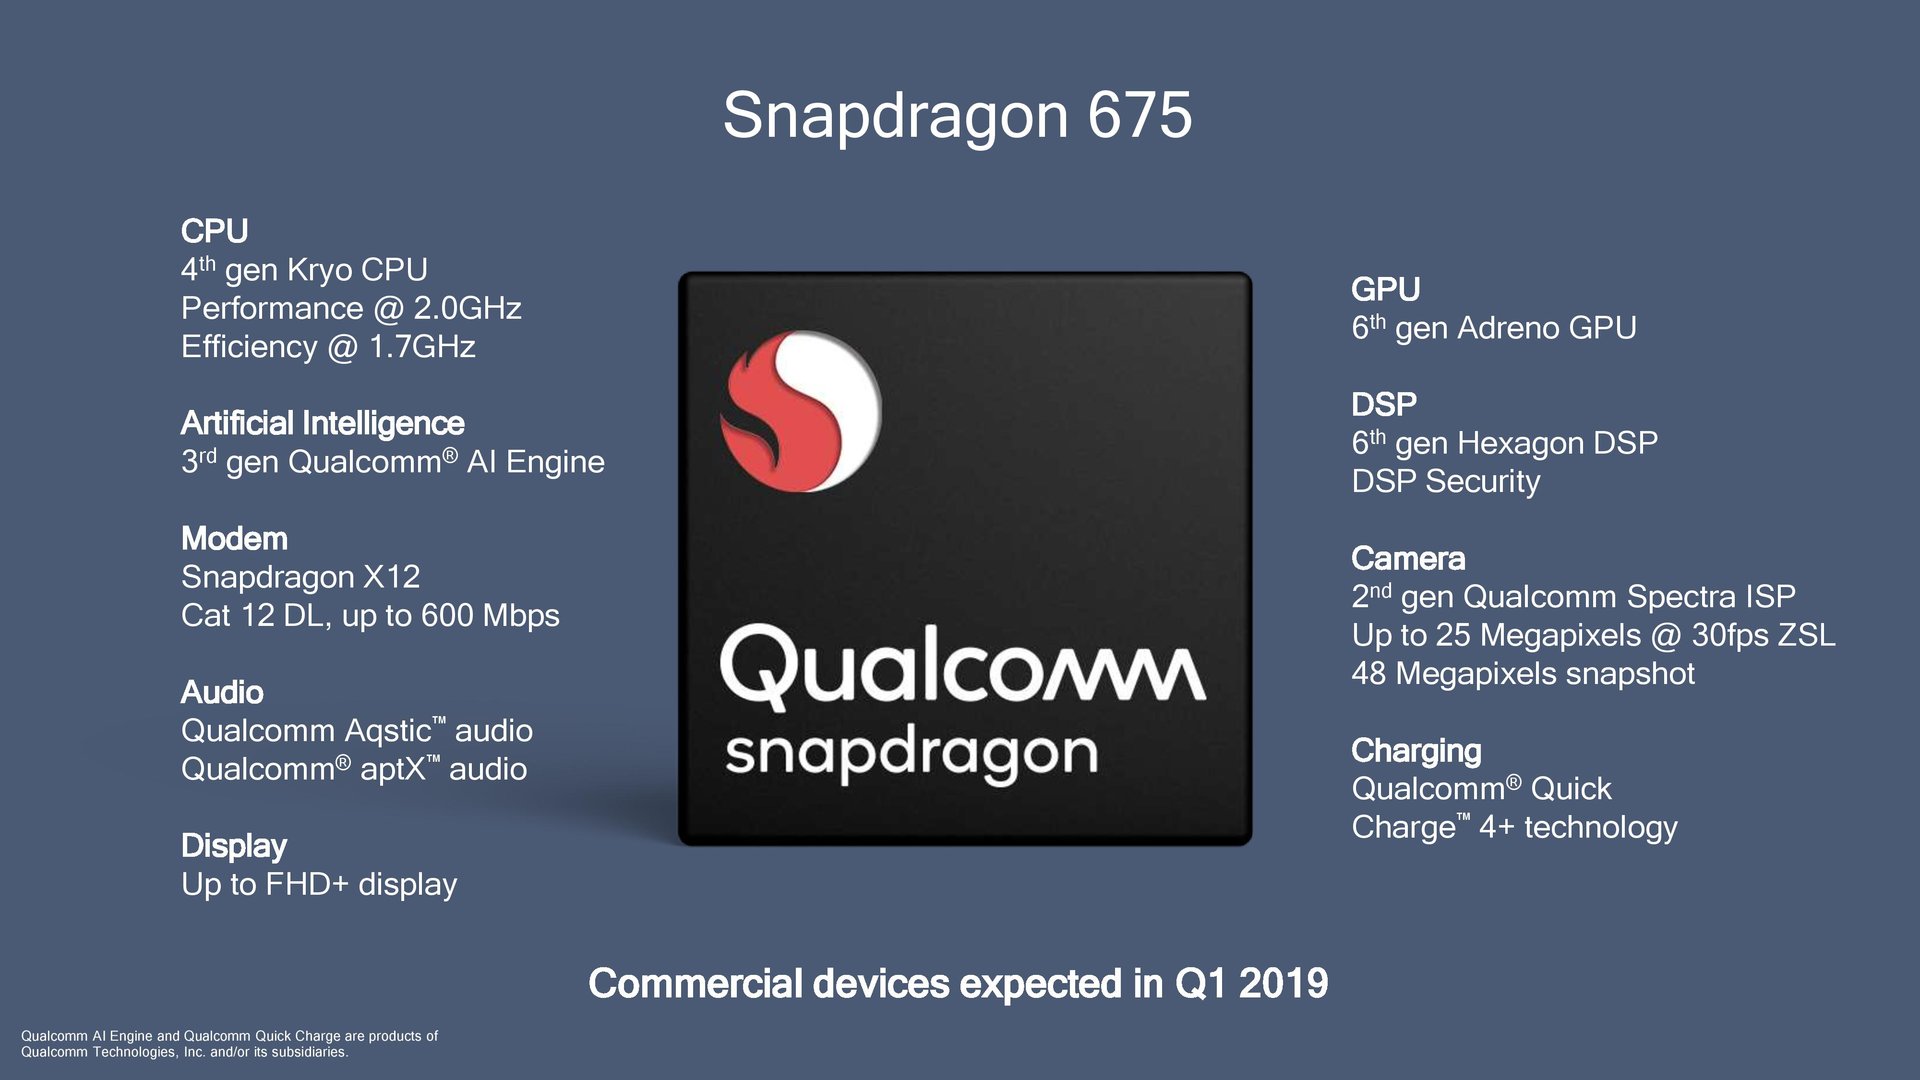 Features des Snapdragon 675 in der Übersicht